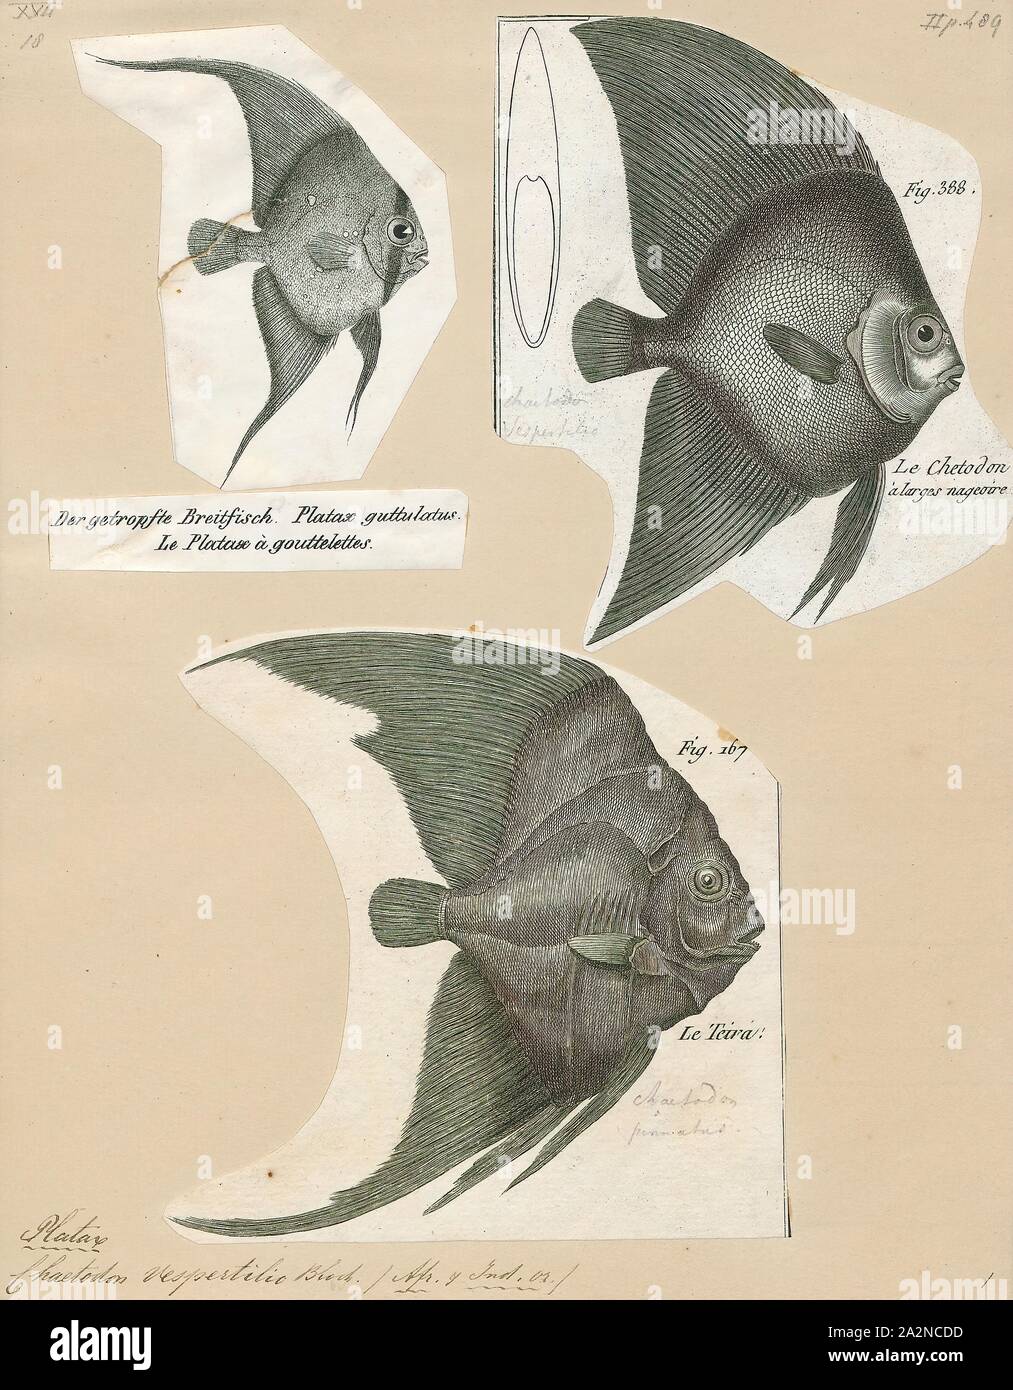 Platax vespertilio, Drucken, Platax ist eine Pflanzenart aus der Gattung der Indopazifischen, Riff-assoziierten Fisch aus der Familie der Ephippidae. Es gibt derzeit fünf bekannten rezenten Arten im Allgemeinen für die Gattung zu gehören. Sie einer der Fische Taxa, die allgemein als "fledermausfische bekannt Stockfoto